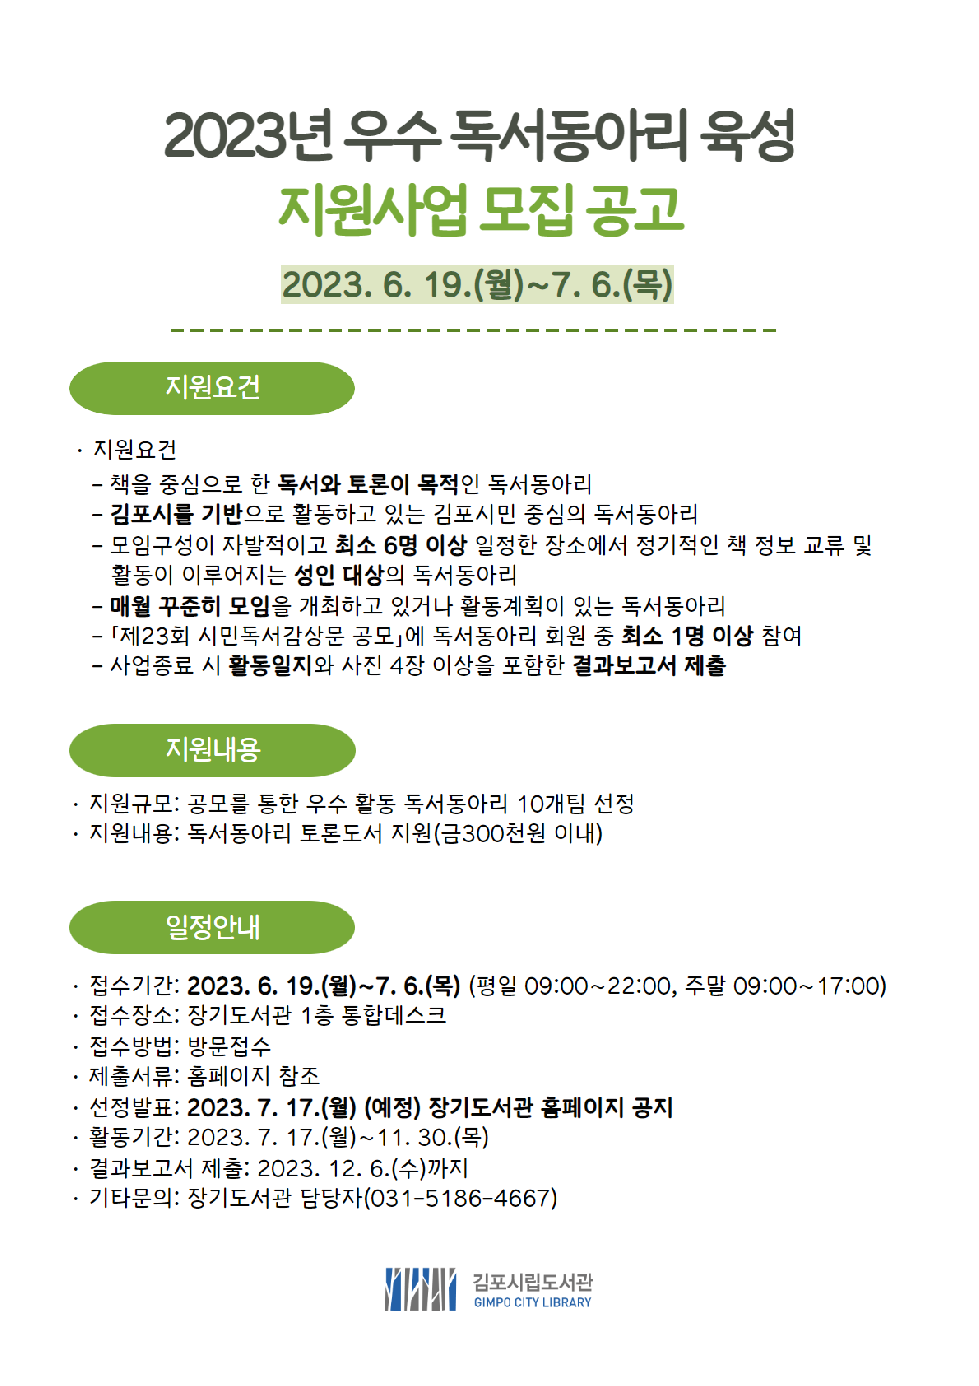 김포시립도서관, 우수 독서동아리에 ‘토론 도서’ 지원